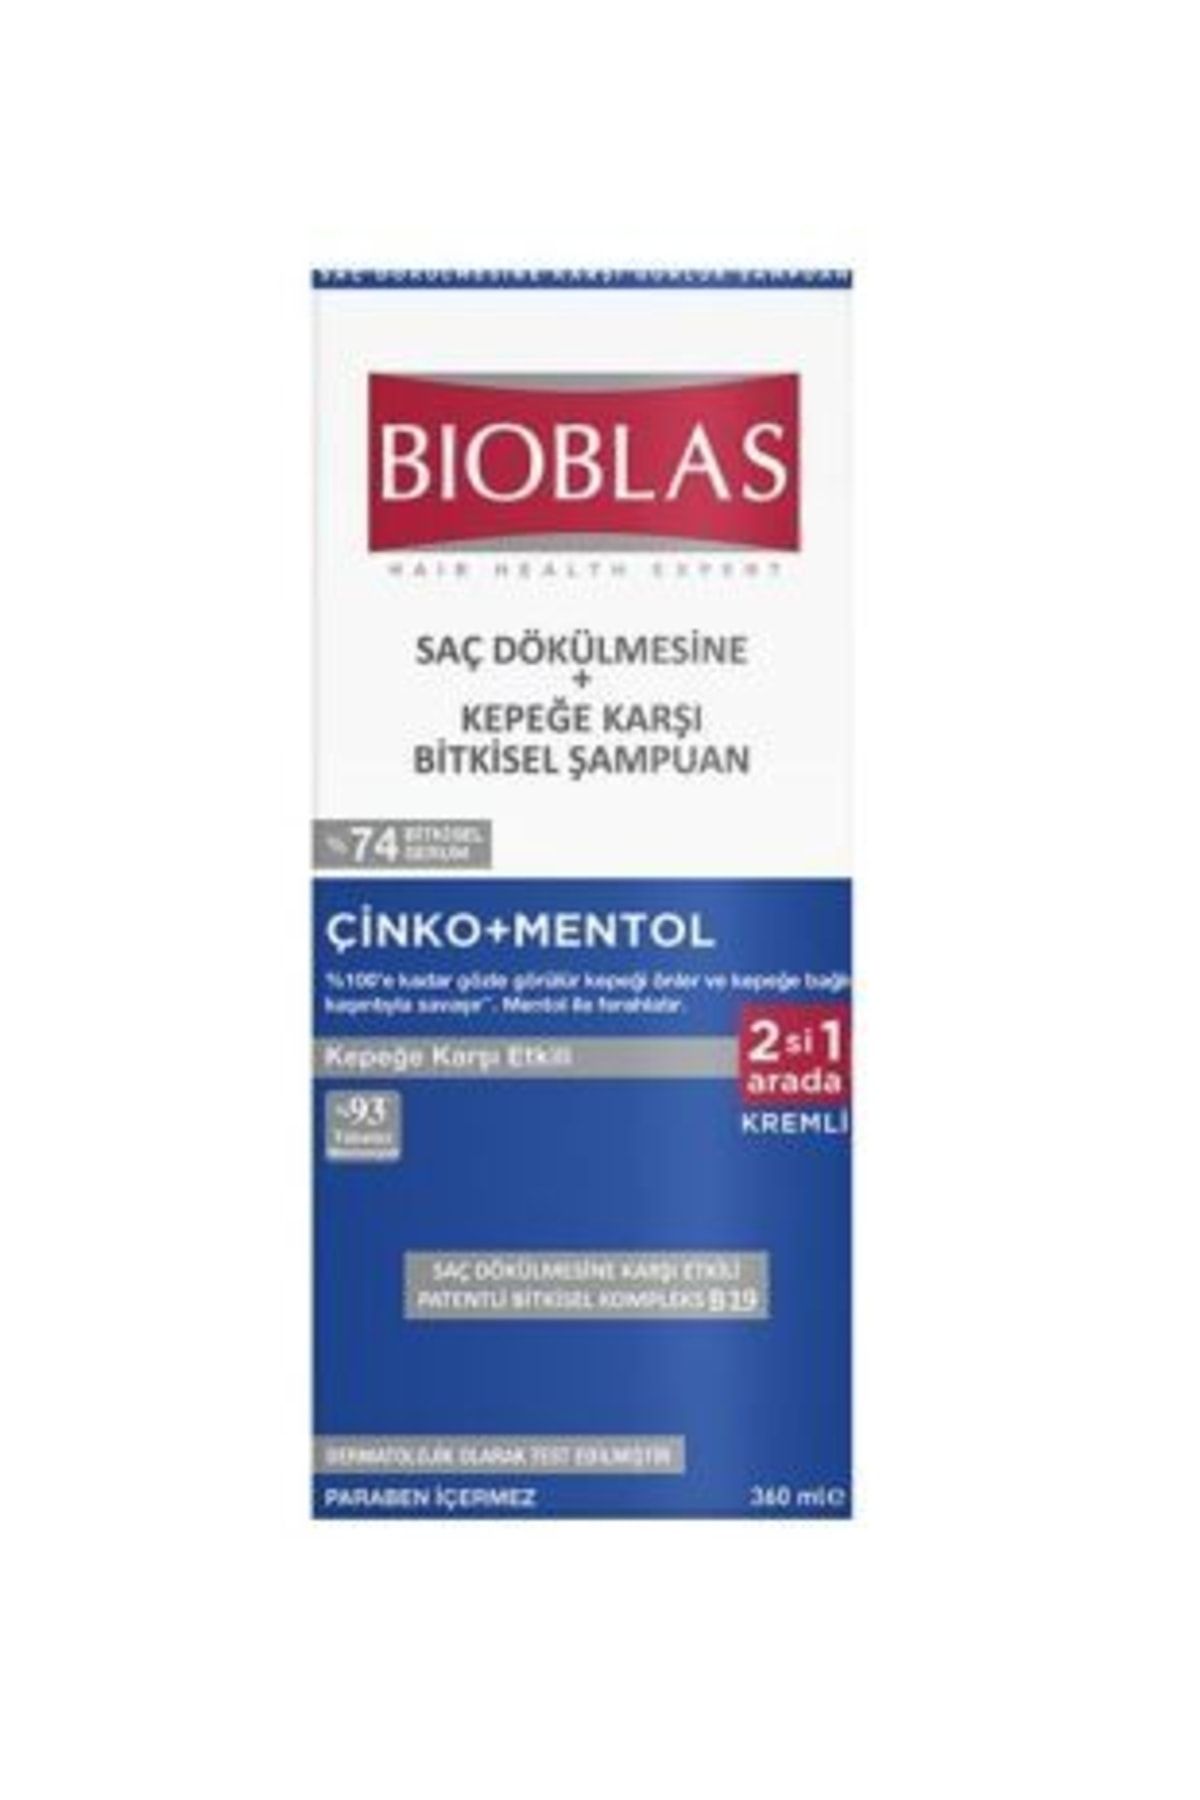 Bioblas Saç Dökülmesine Ve Kepeğe Karşı Etkili Şampuan 360 ml